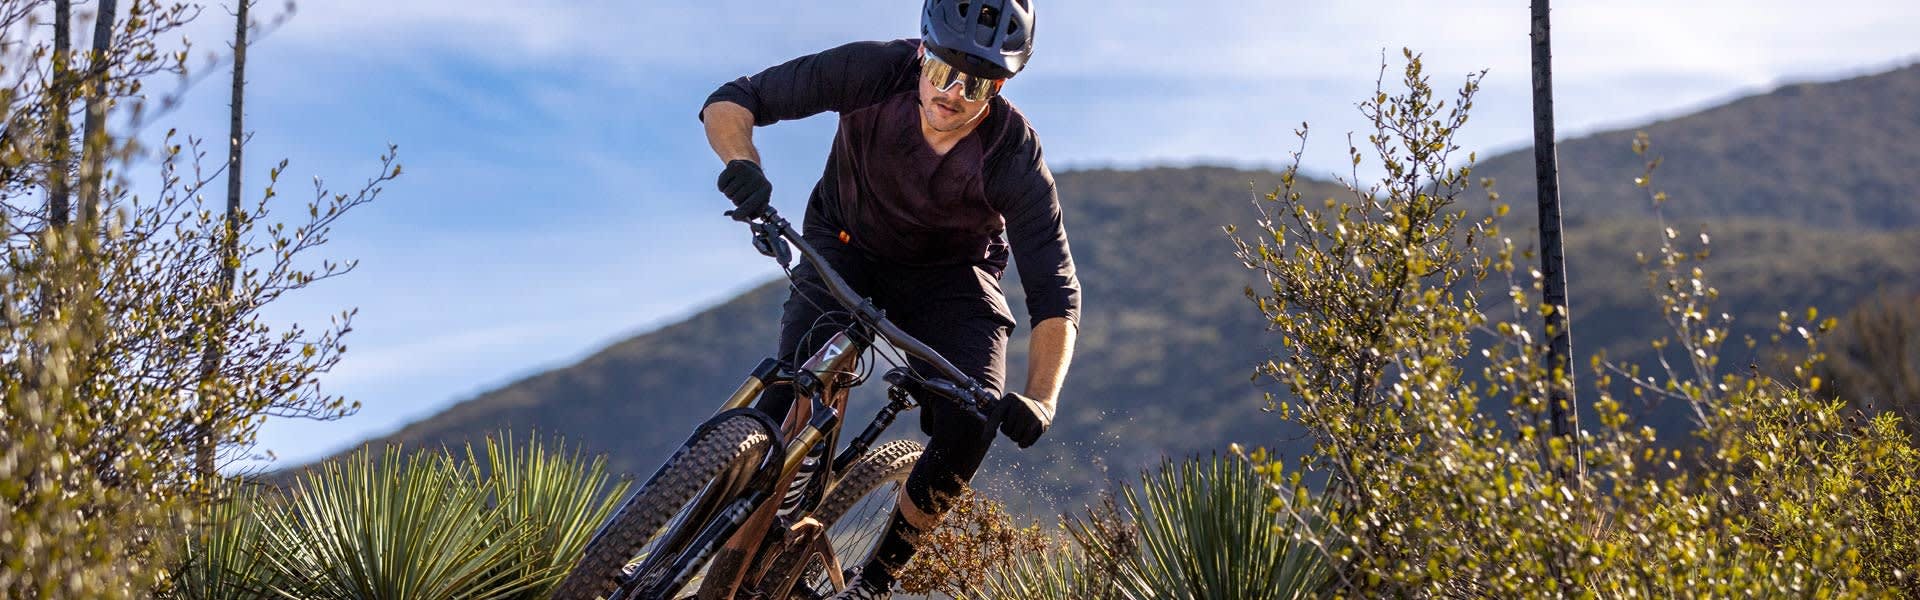 A man riding a bike through rough terrain